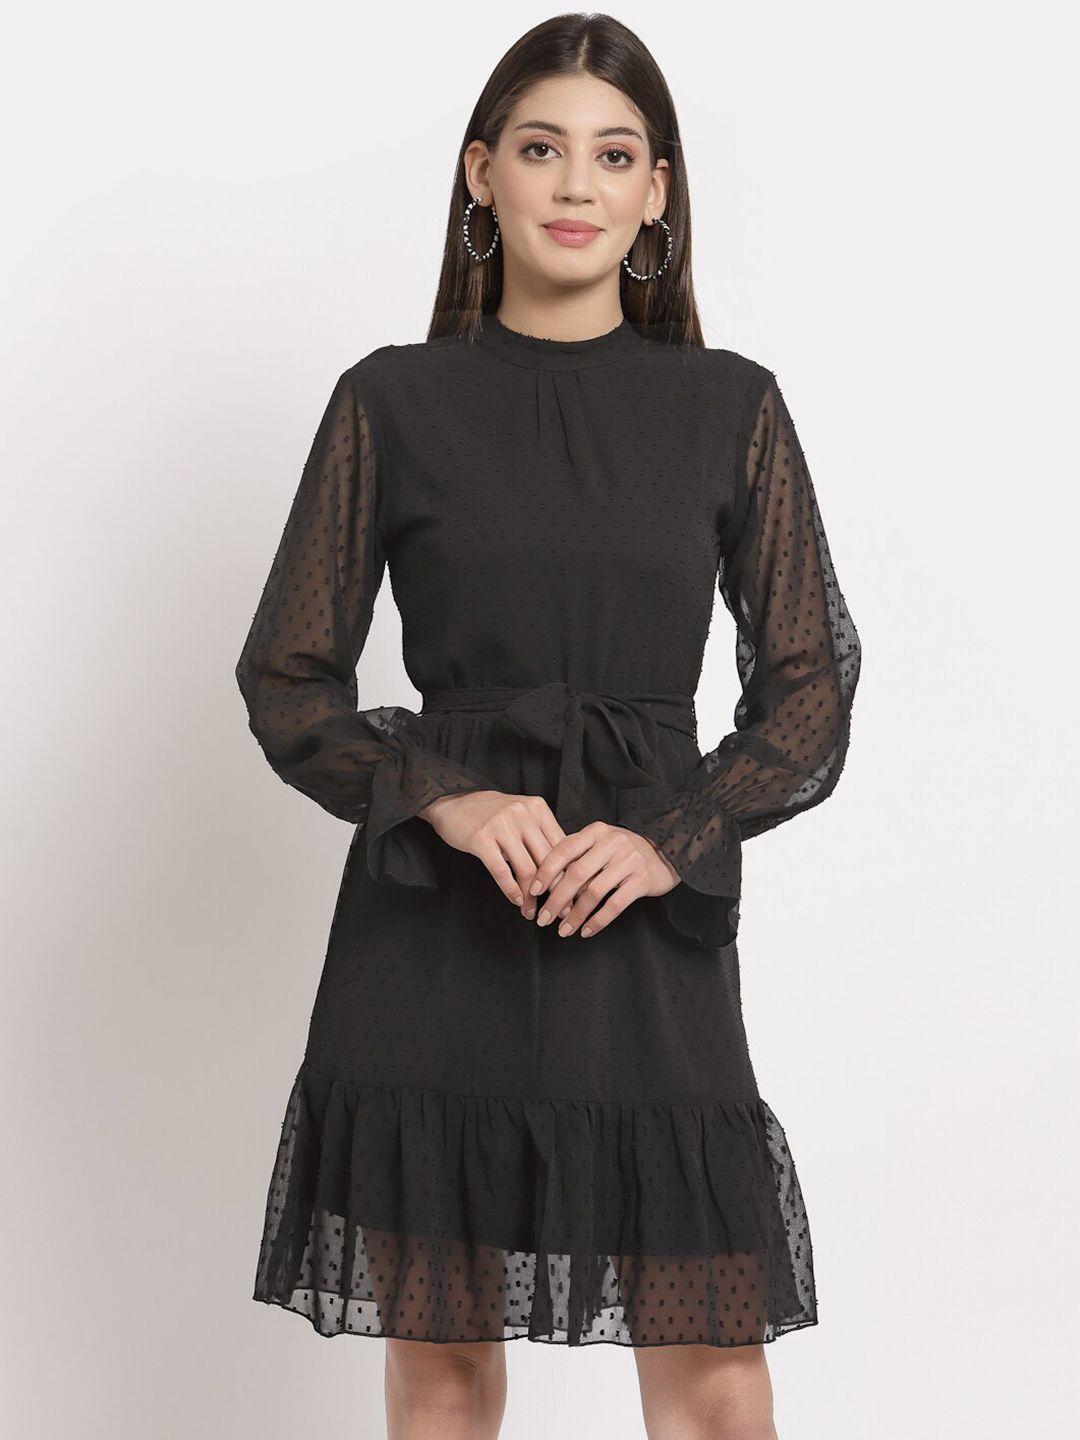 aayu women black georgette dress